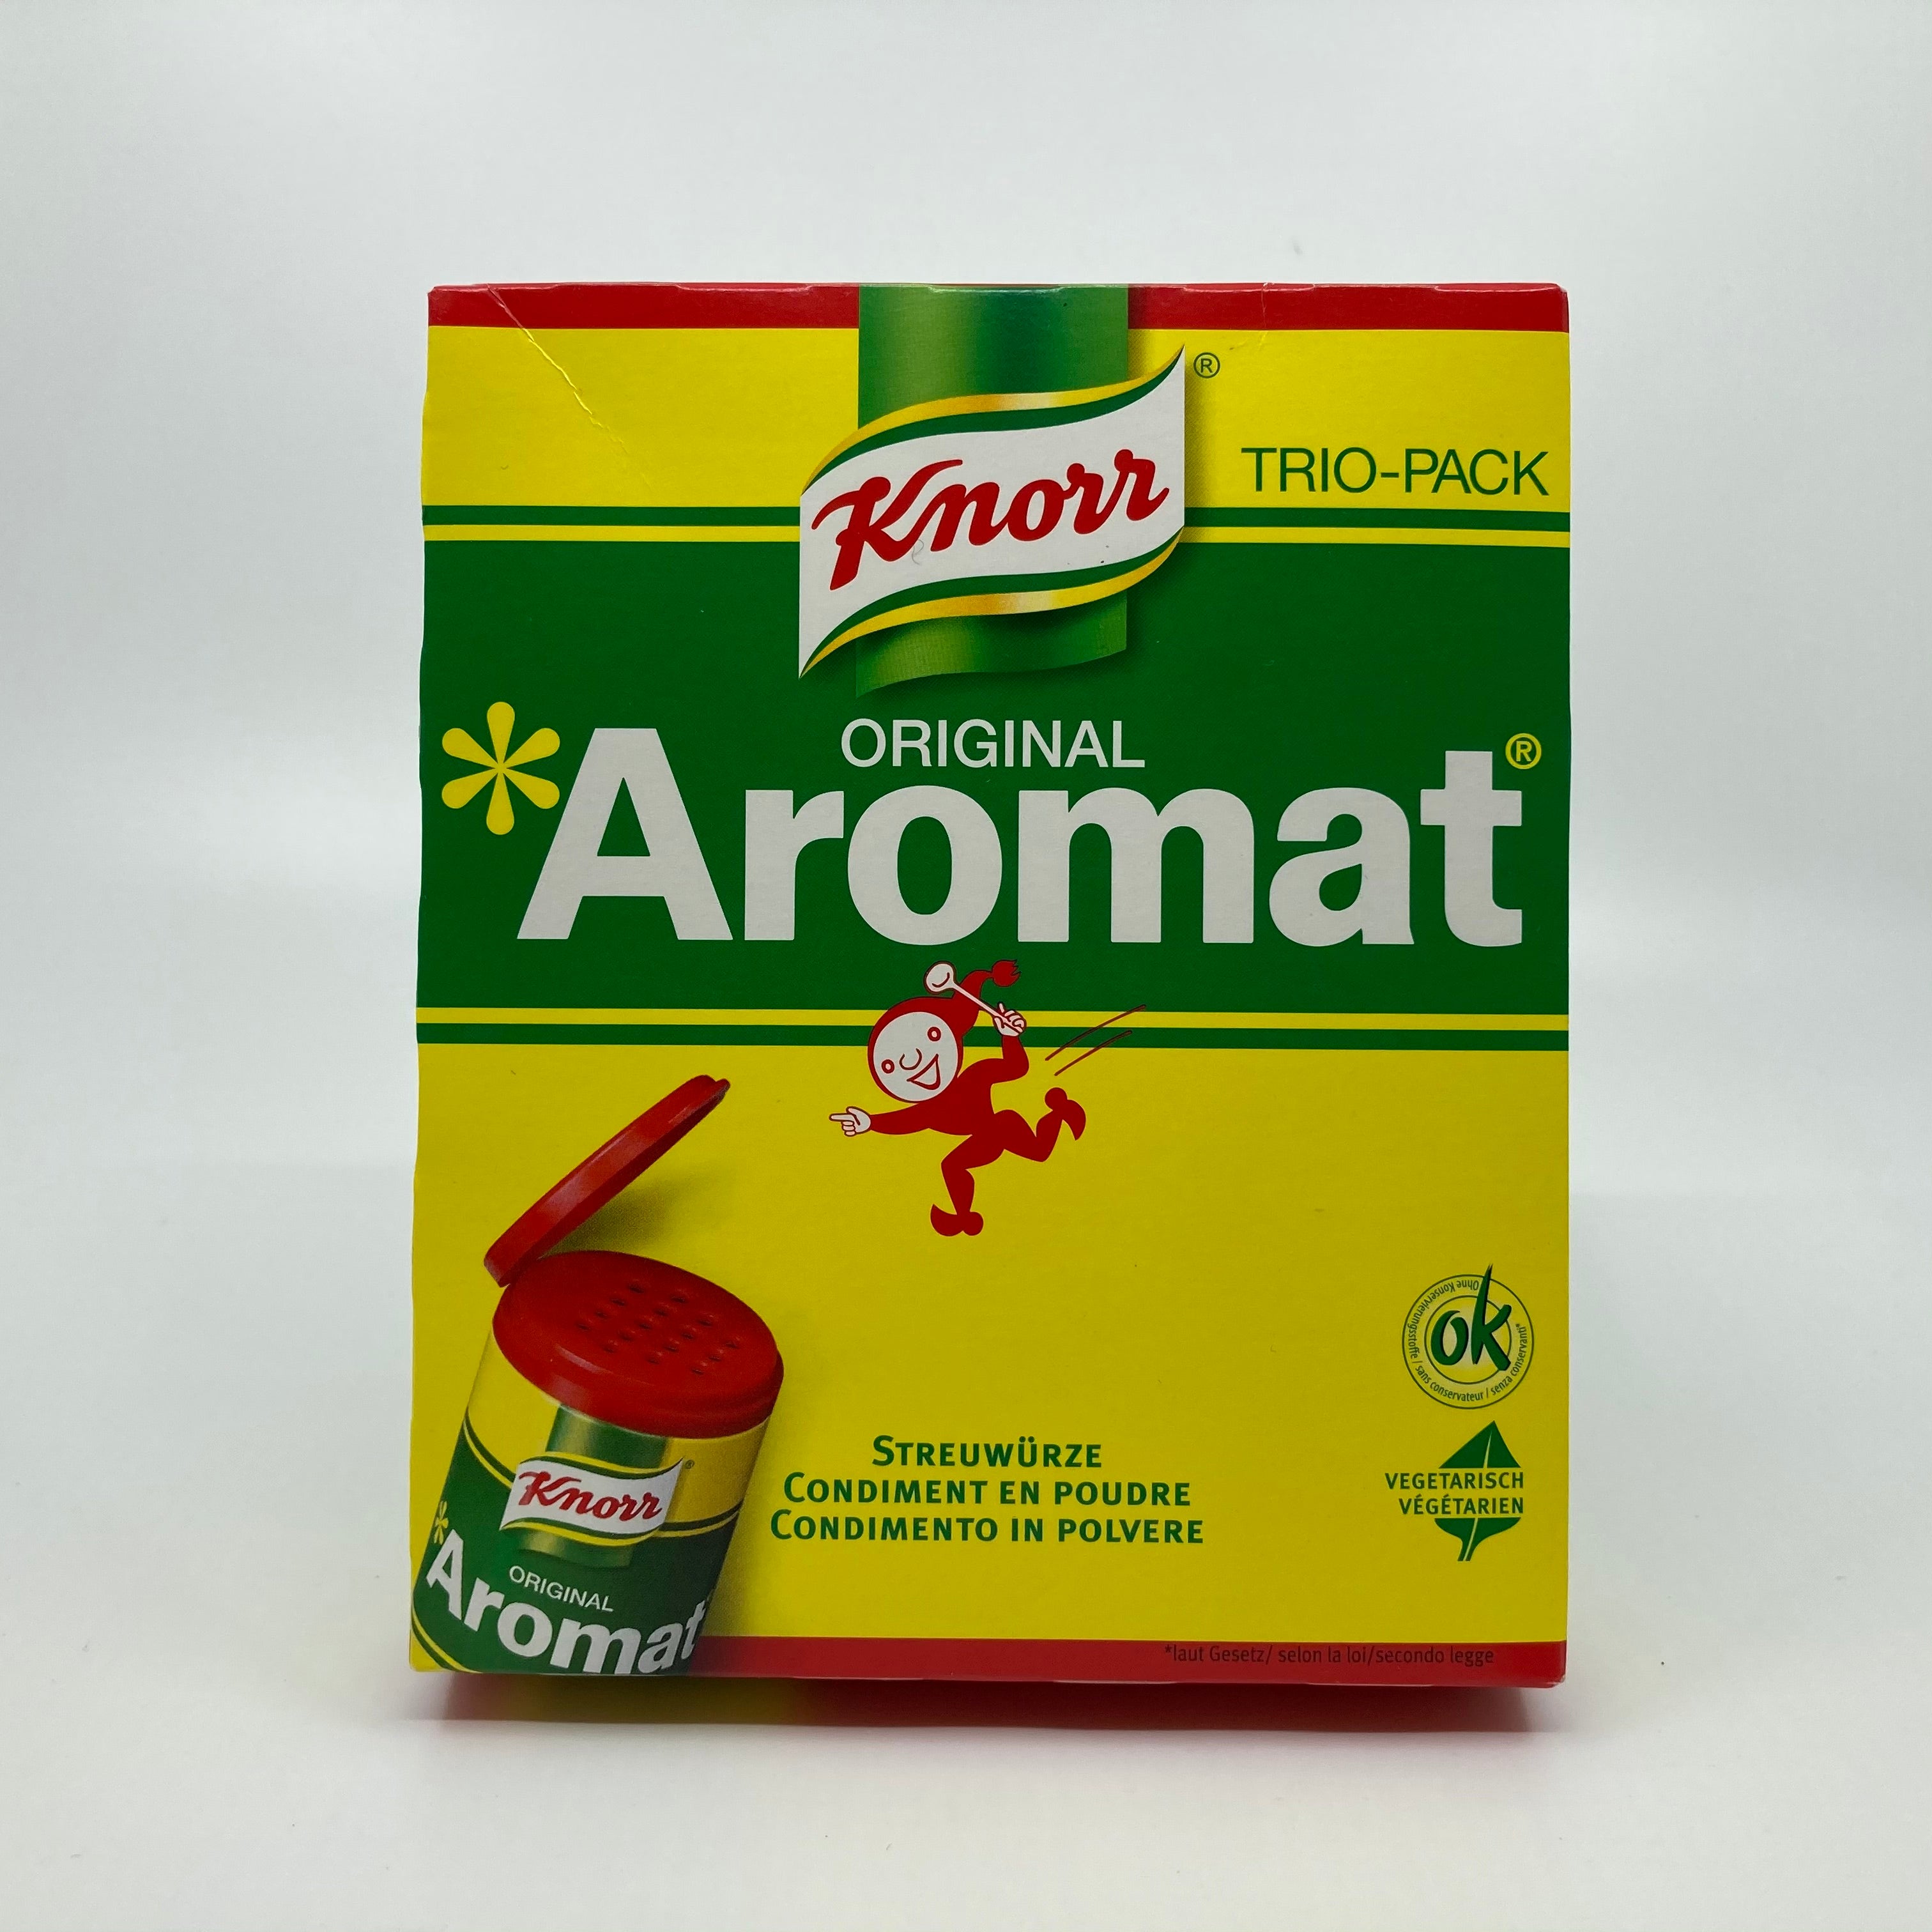 Knorr Aromat Trio-Pack – My Swiss World